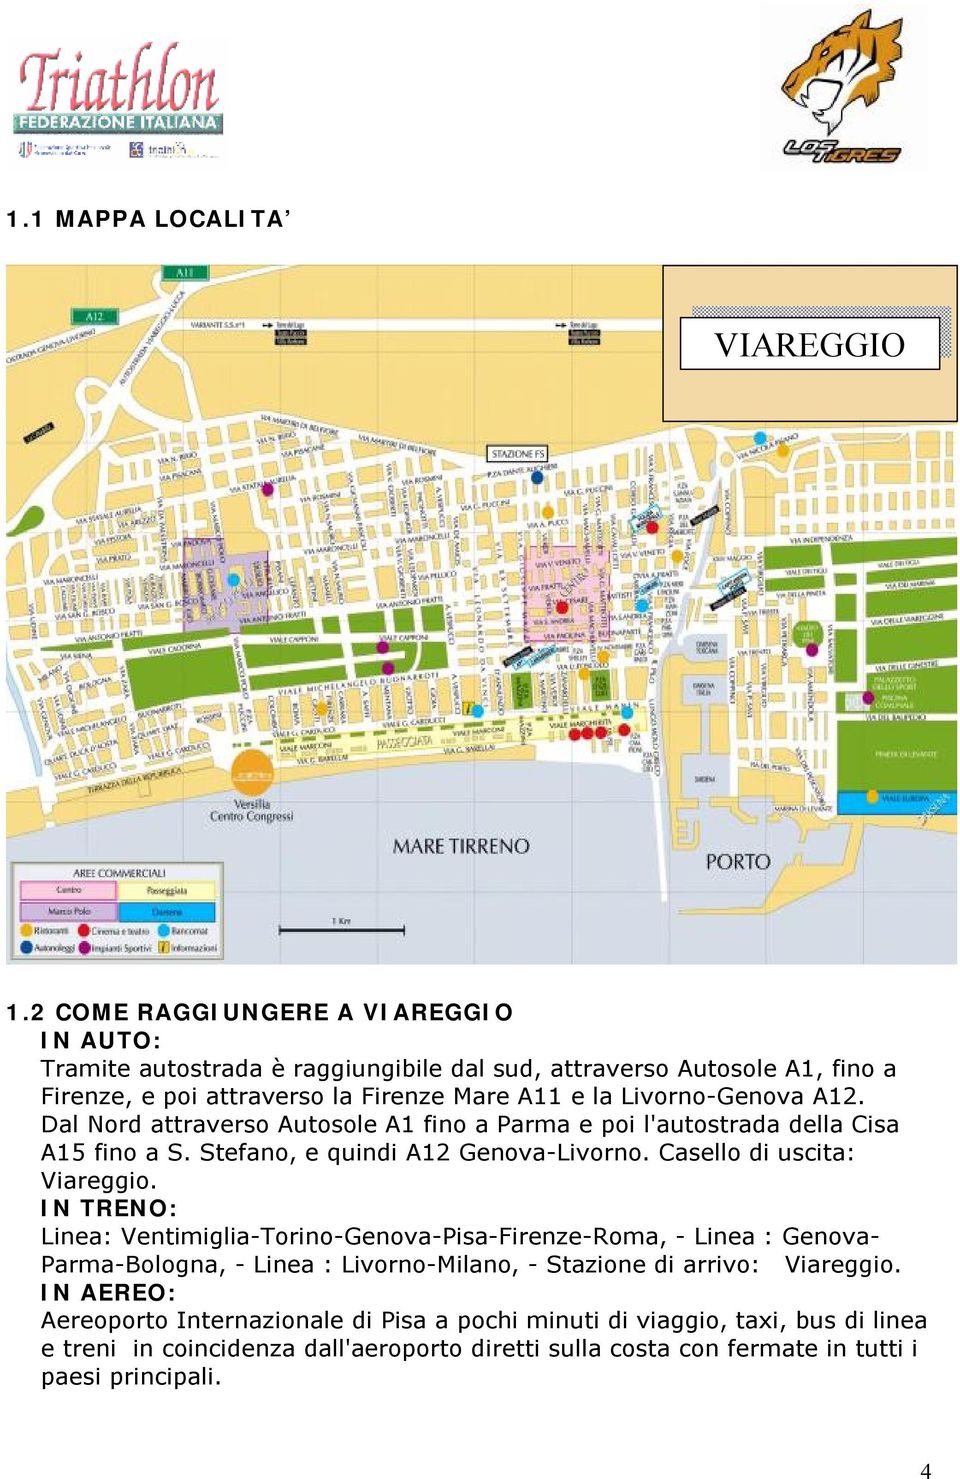 Livorno-Genova A12. Dal Nord attraverso Autosole A1 fino a Parma e poi l'autostrada della Cisa A15 fino a S. Stefano, e quindi A12 Genova-Livorno. Casello di uscita: Viareggio.